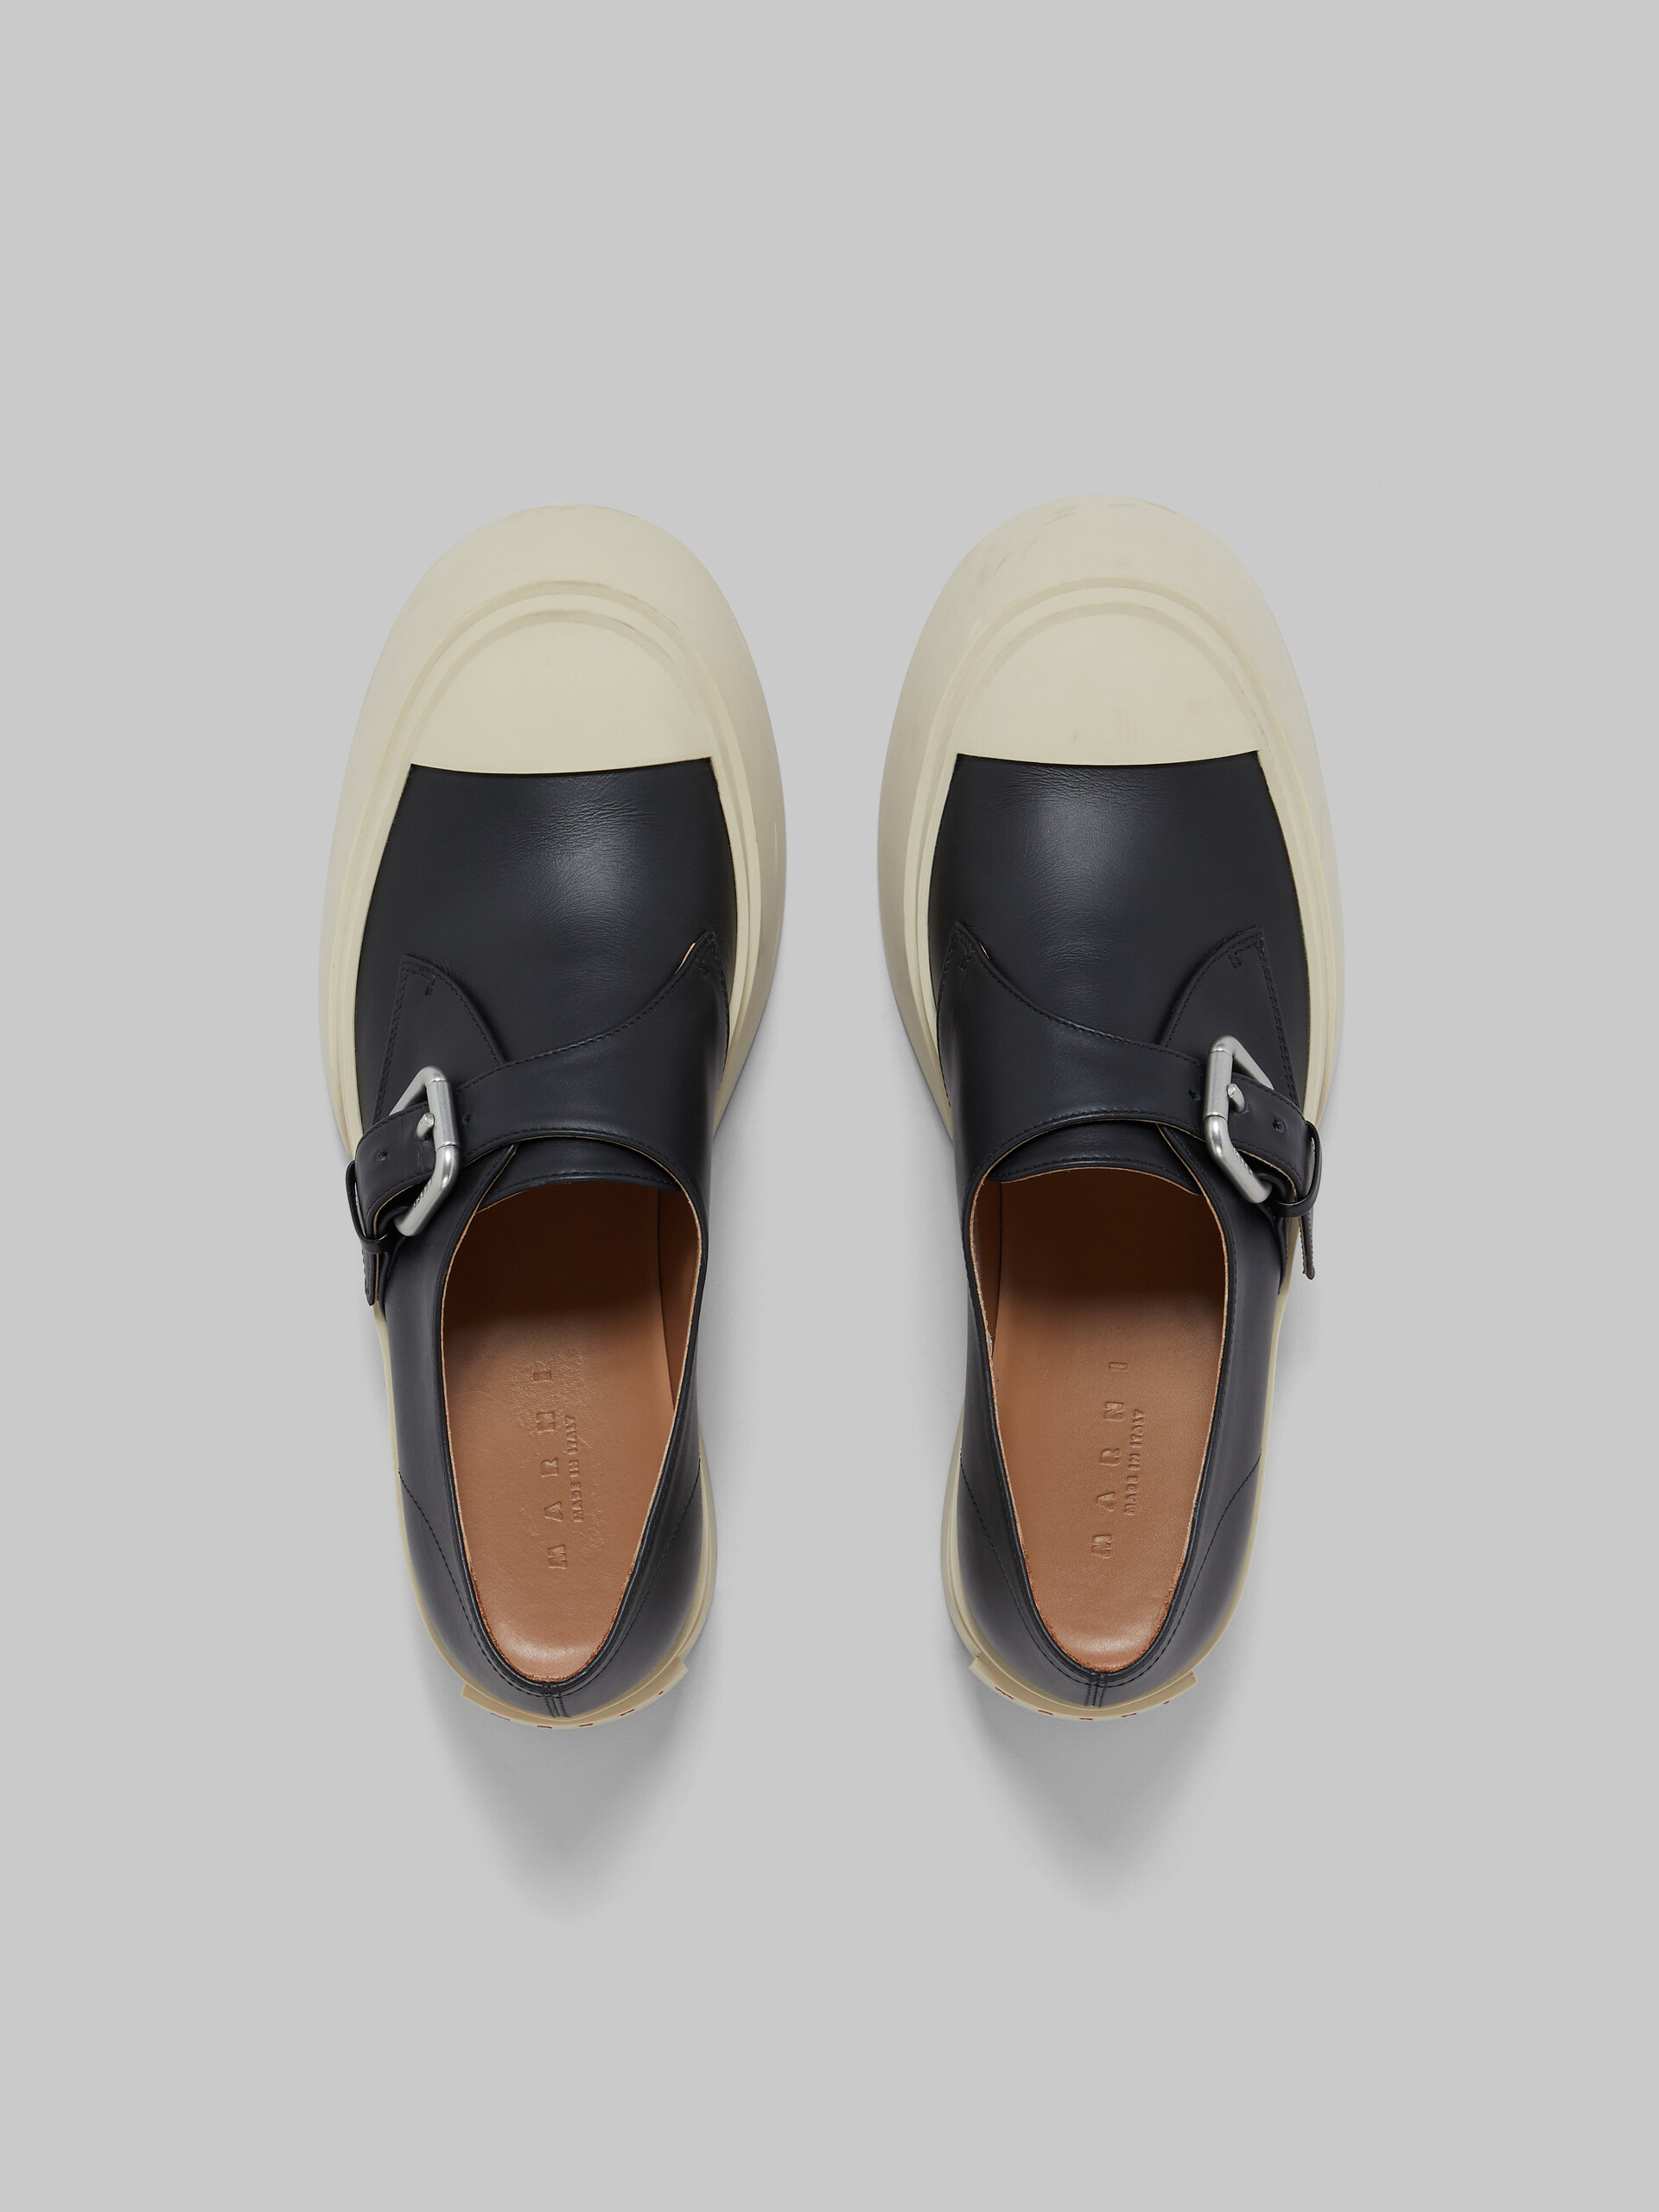 Zapato Pablo con cierre de hebilla de piel negra - Sneakers - Image 4